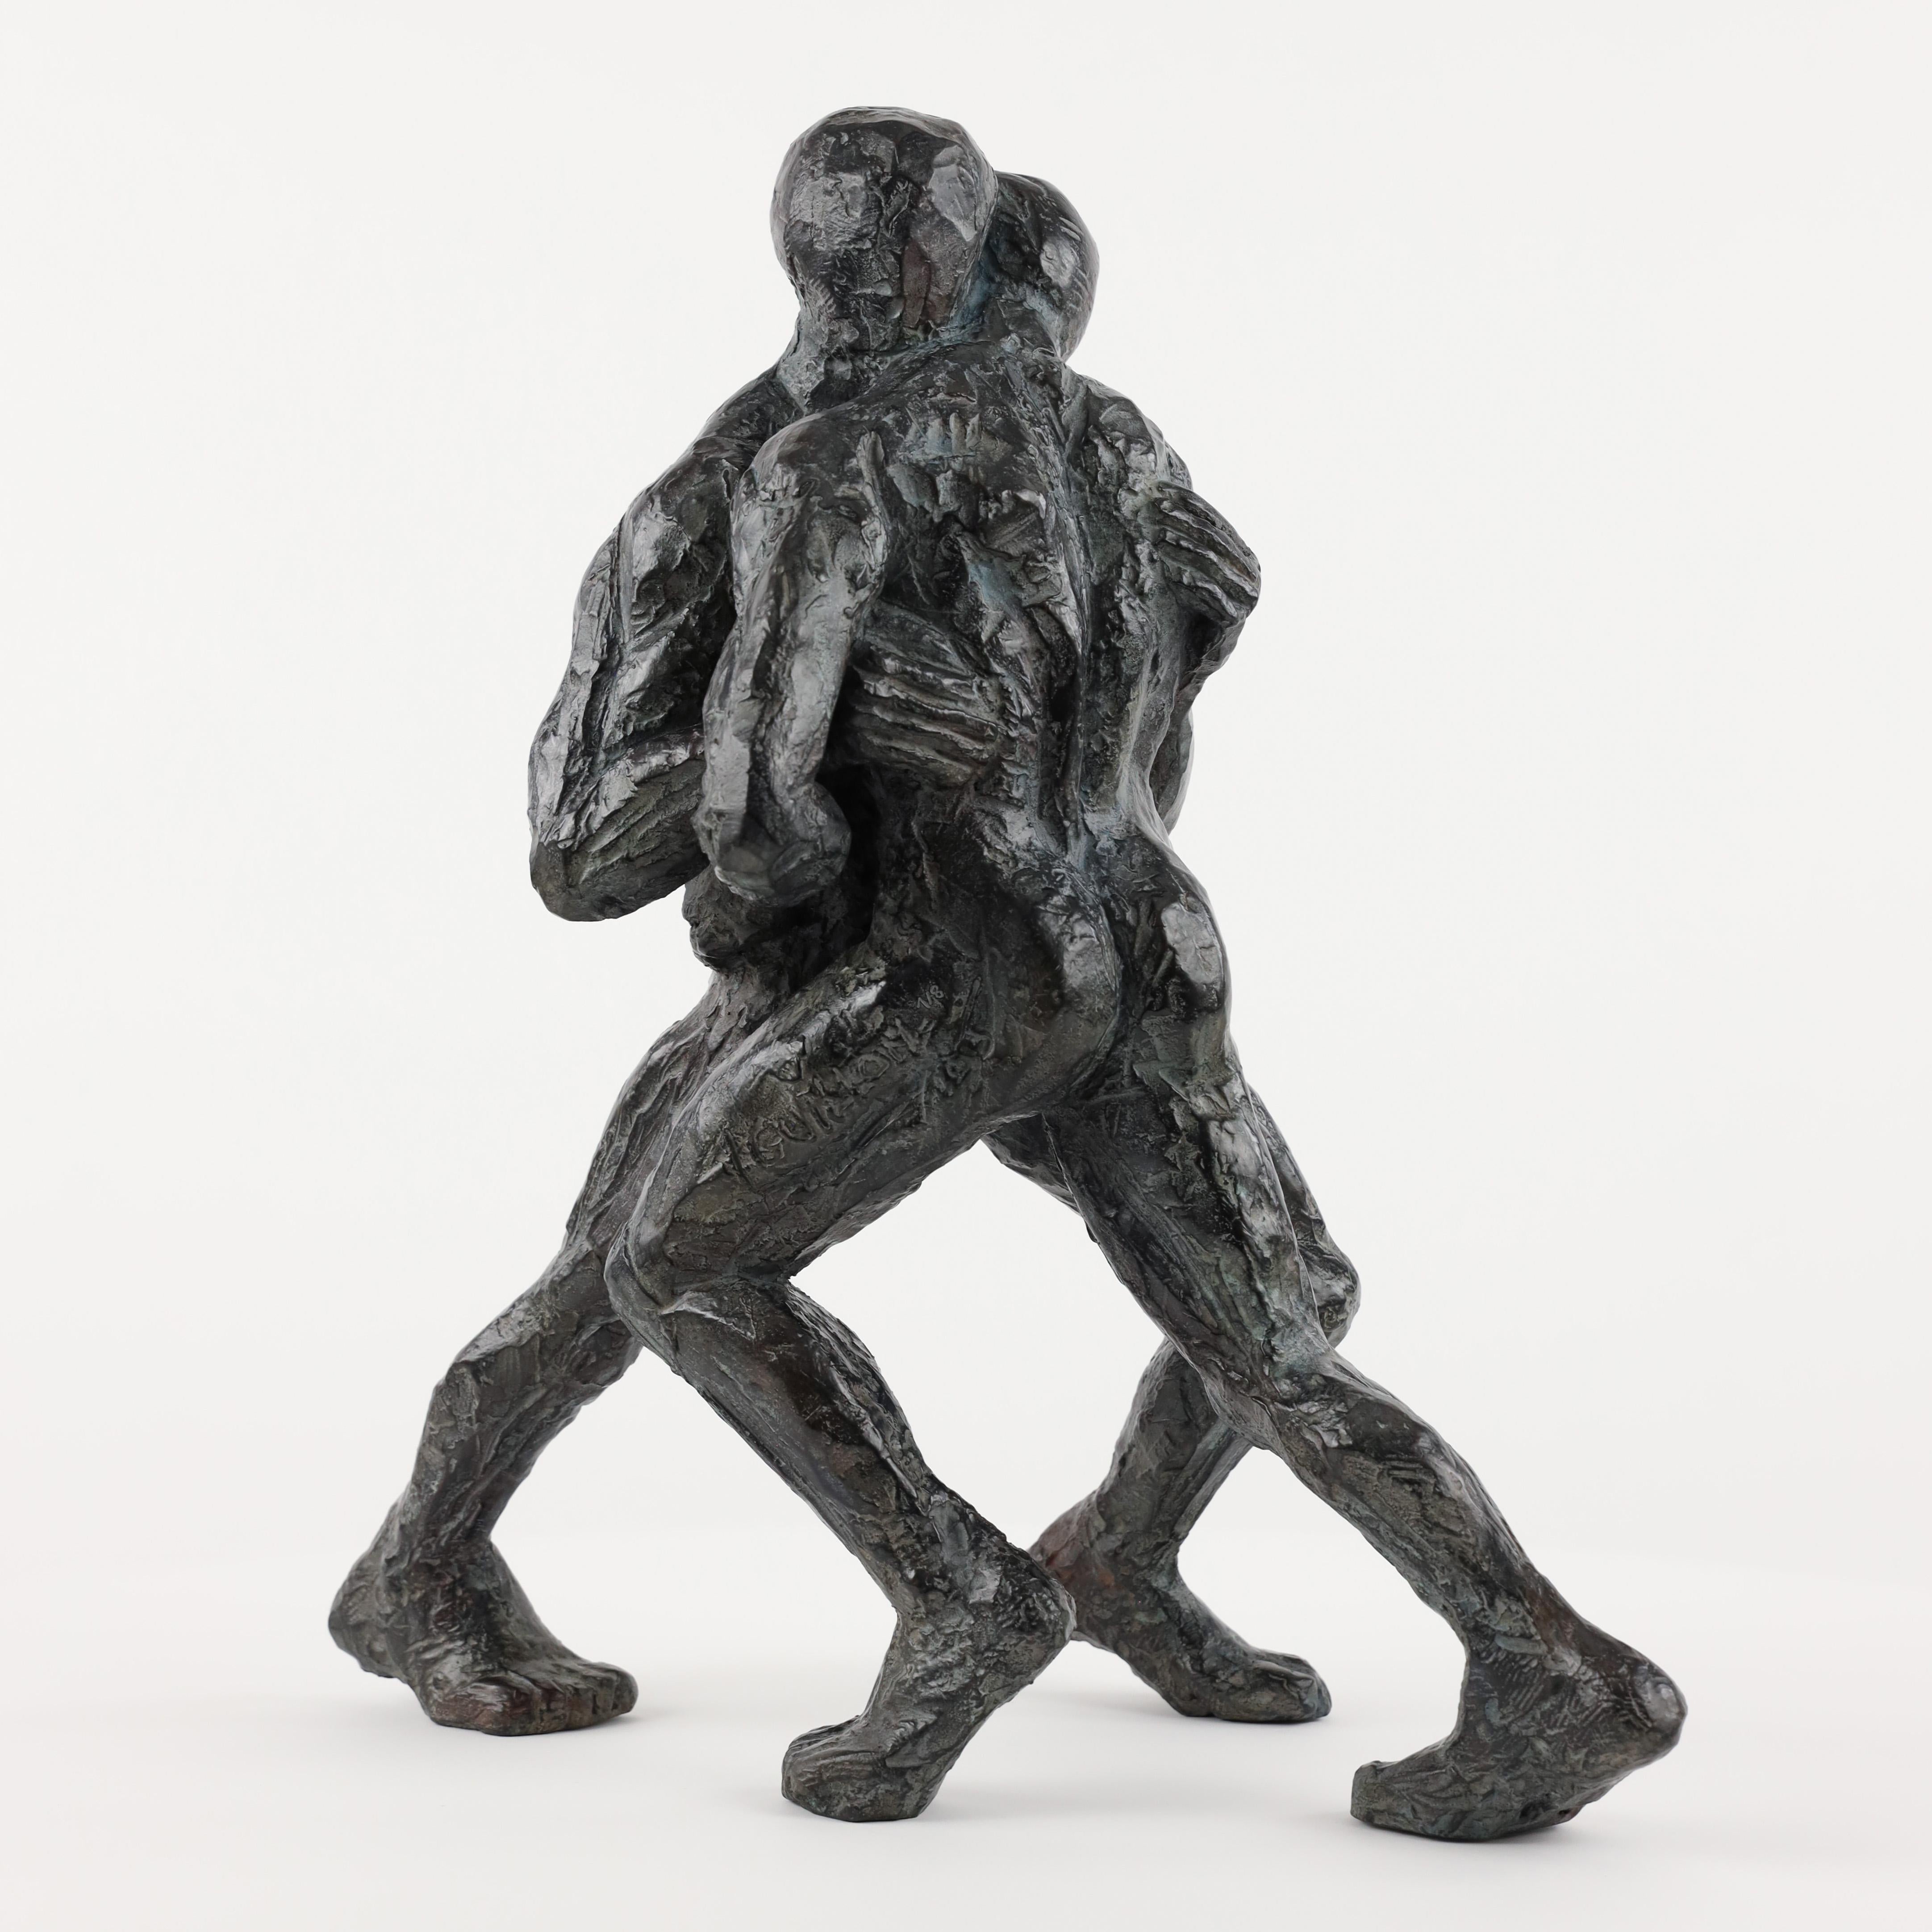 Wrestler VIII est une sculpture en bronze de l'artiste contemporain français Yann Guillon, dont les dimensions sont 47 × 44 × 29 cm (18,5 × 17,3 × 11,4 in). 
Cette sculpture est signée et numérotée, elle fait partie d'une édition limitée à 8